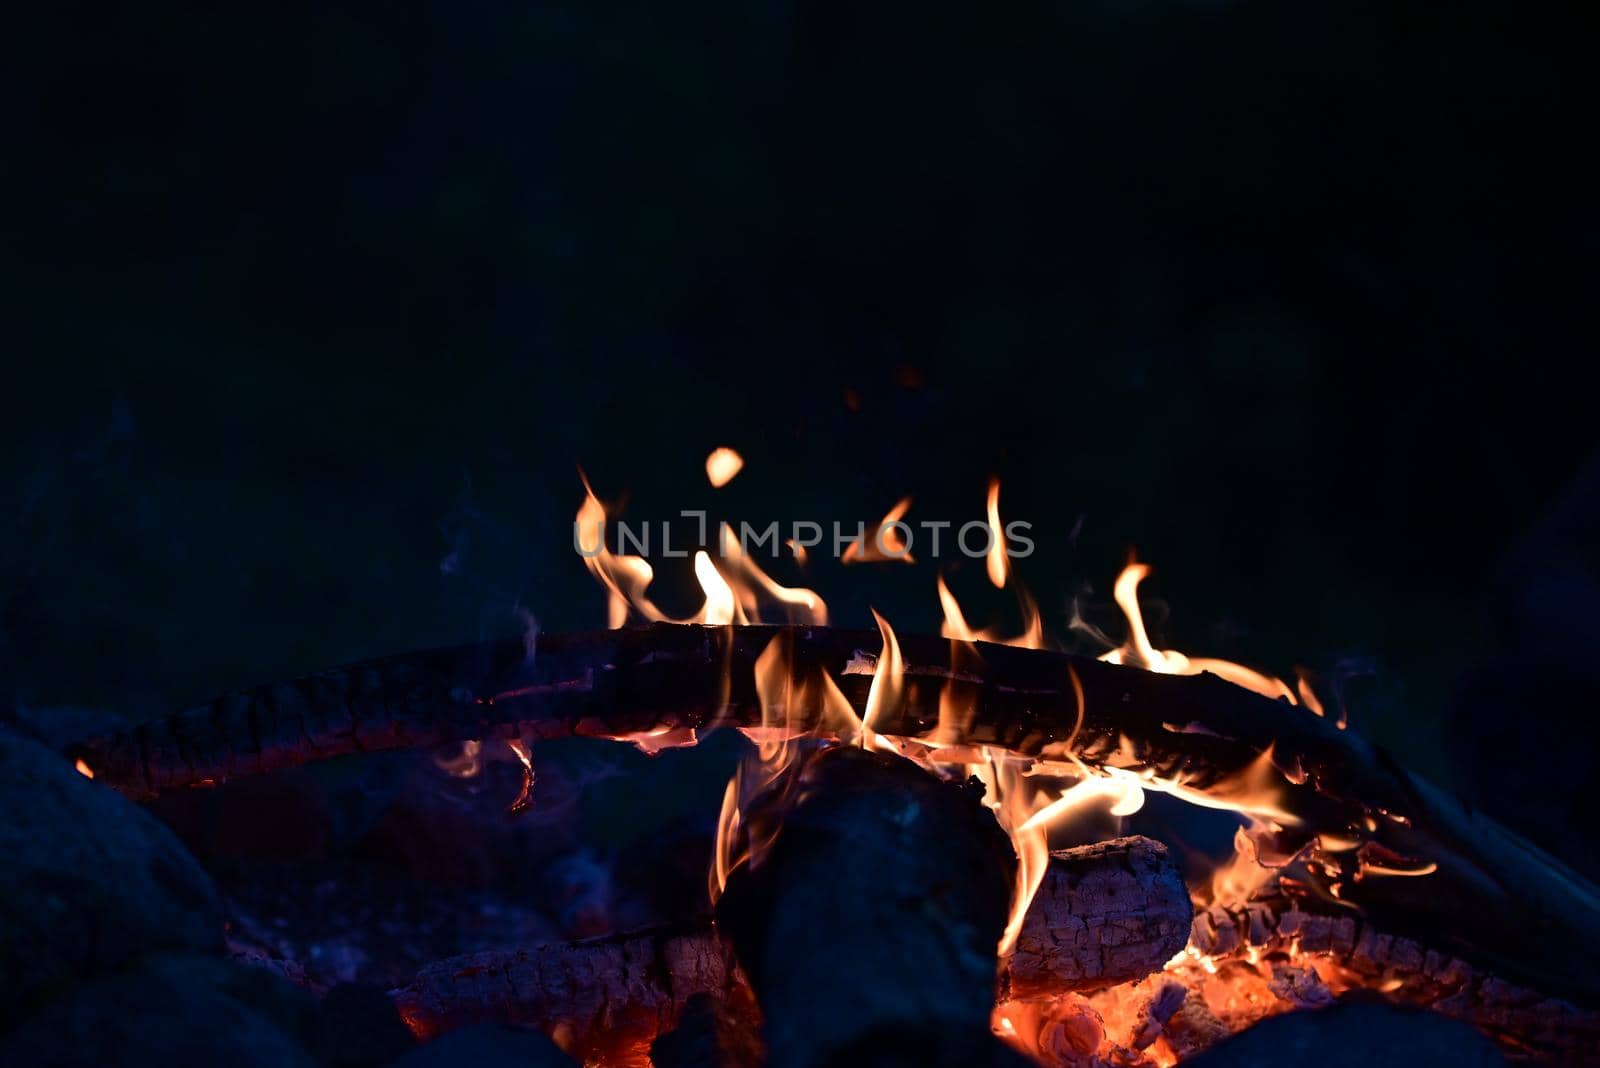 Campfire at night as a close-up